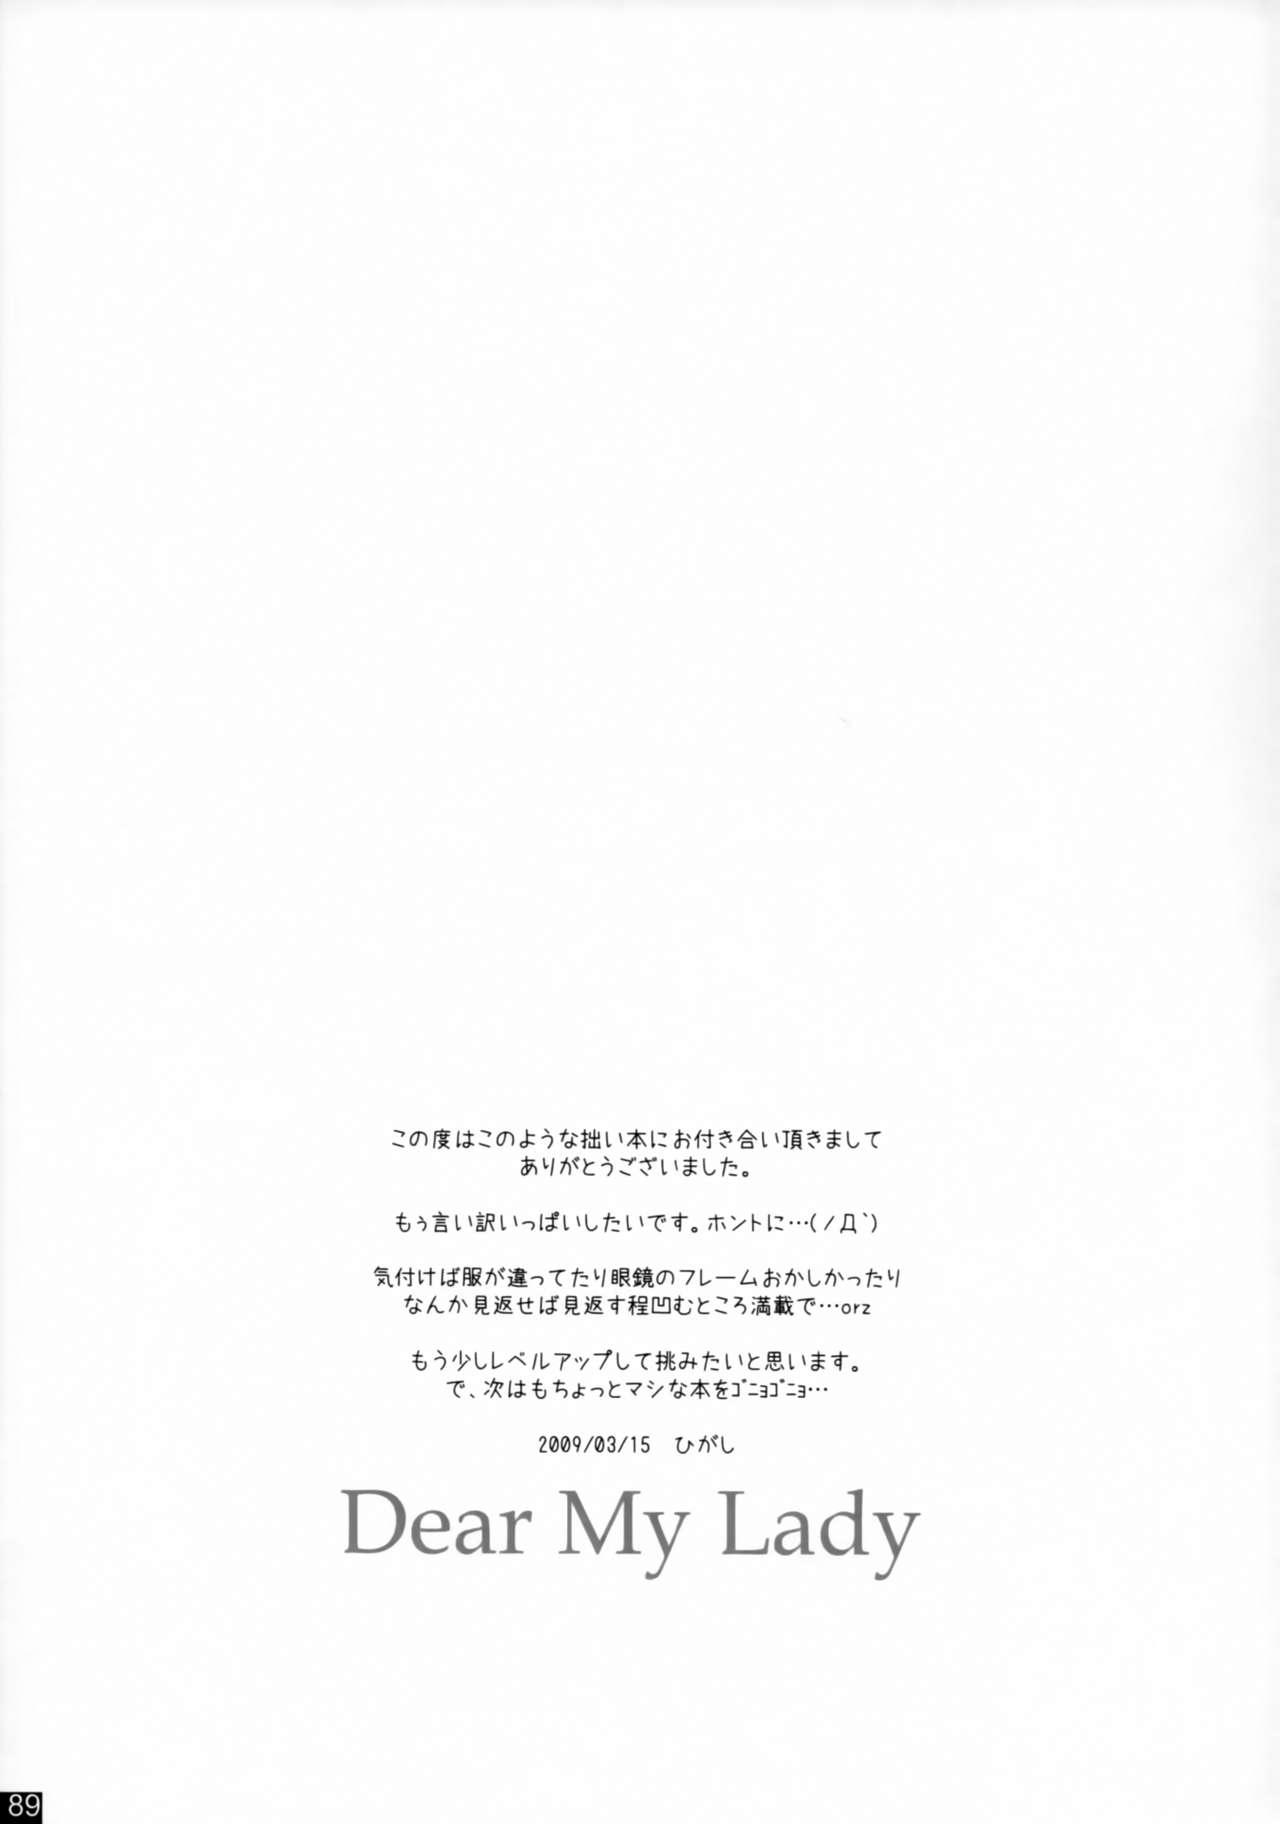 Dear My Lady 87